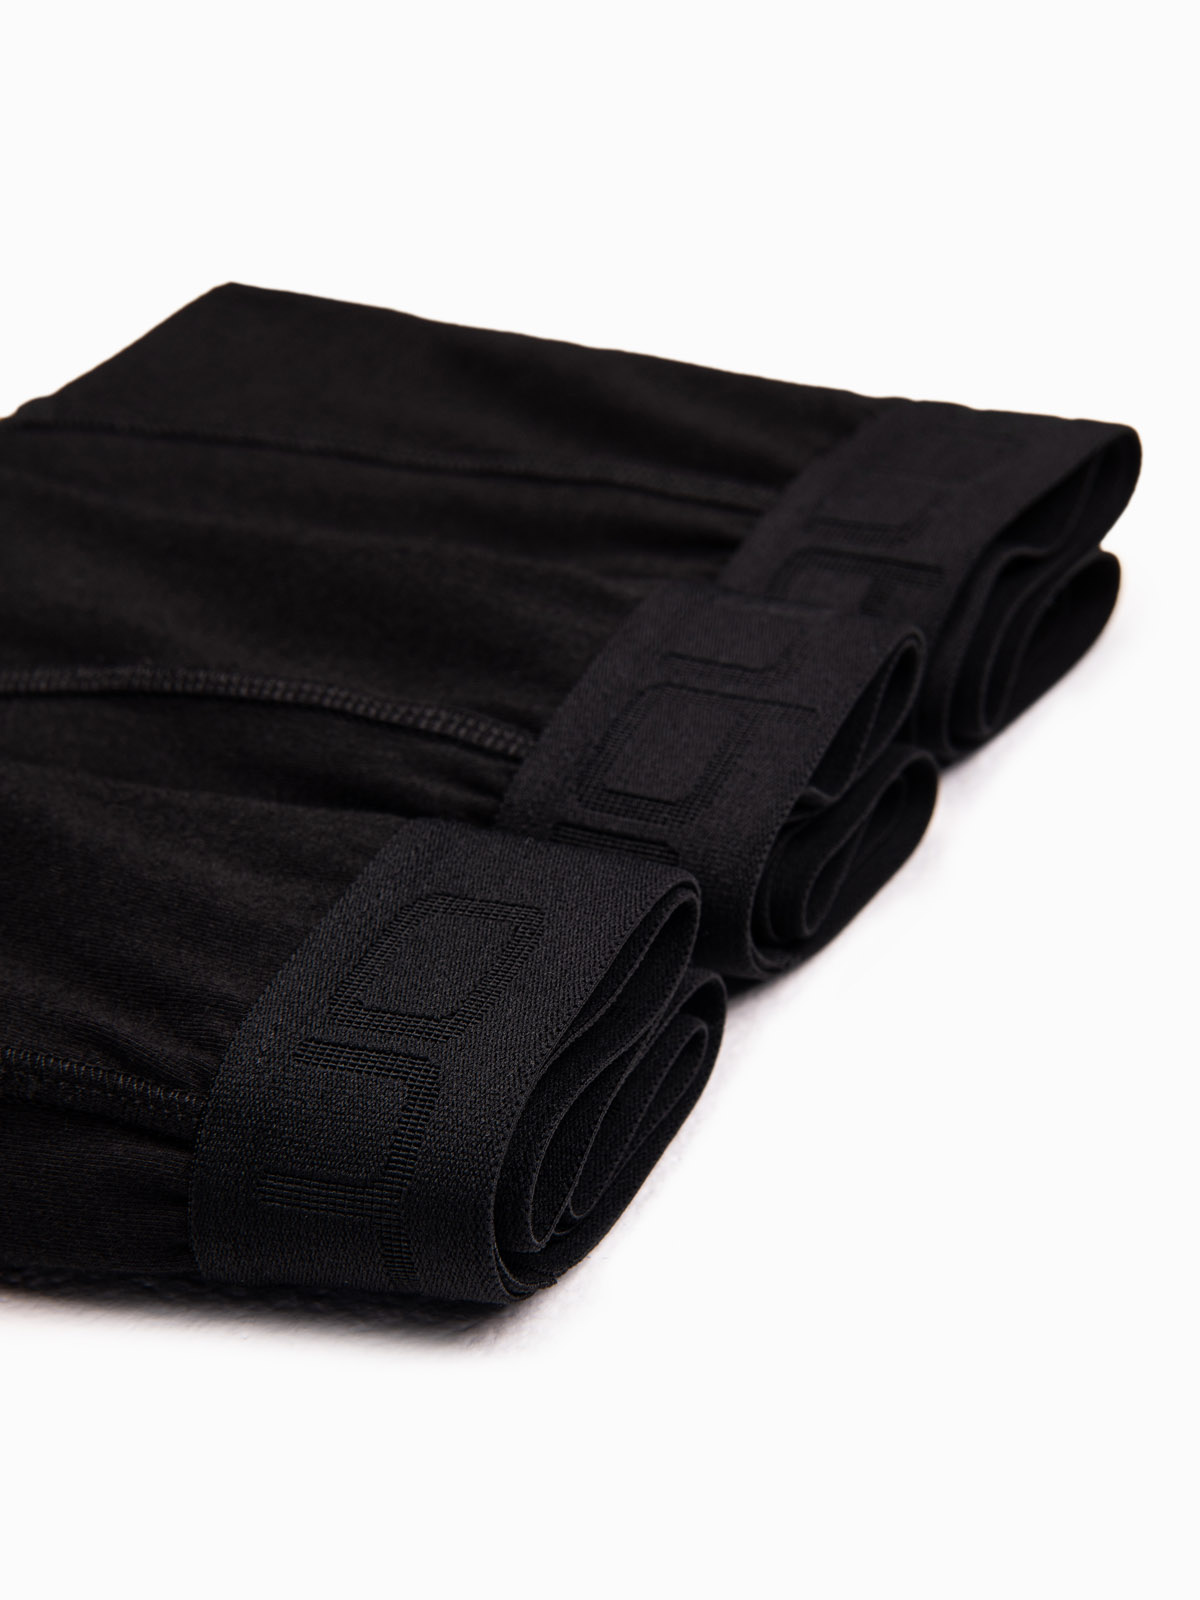 Bokserki męskie bawełniane z kontrastową gumą - 7-pak czarne V1  OM-UNBO-0100 - Sklep Ombre